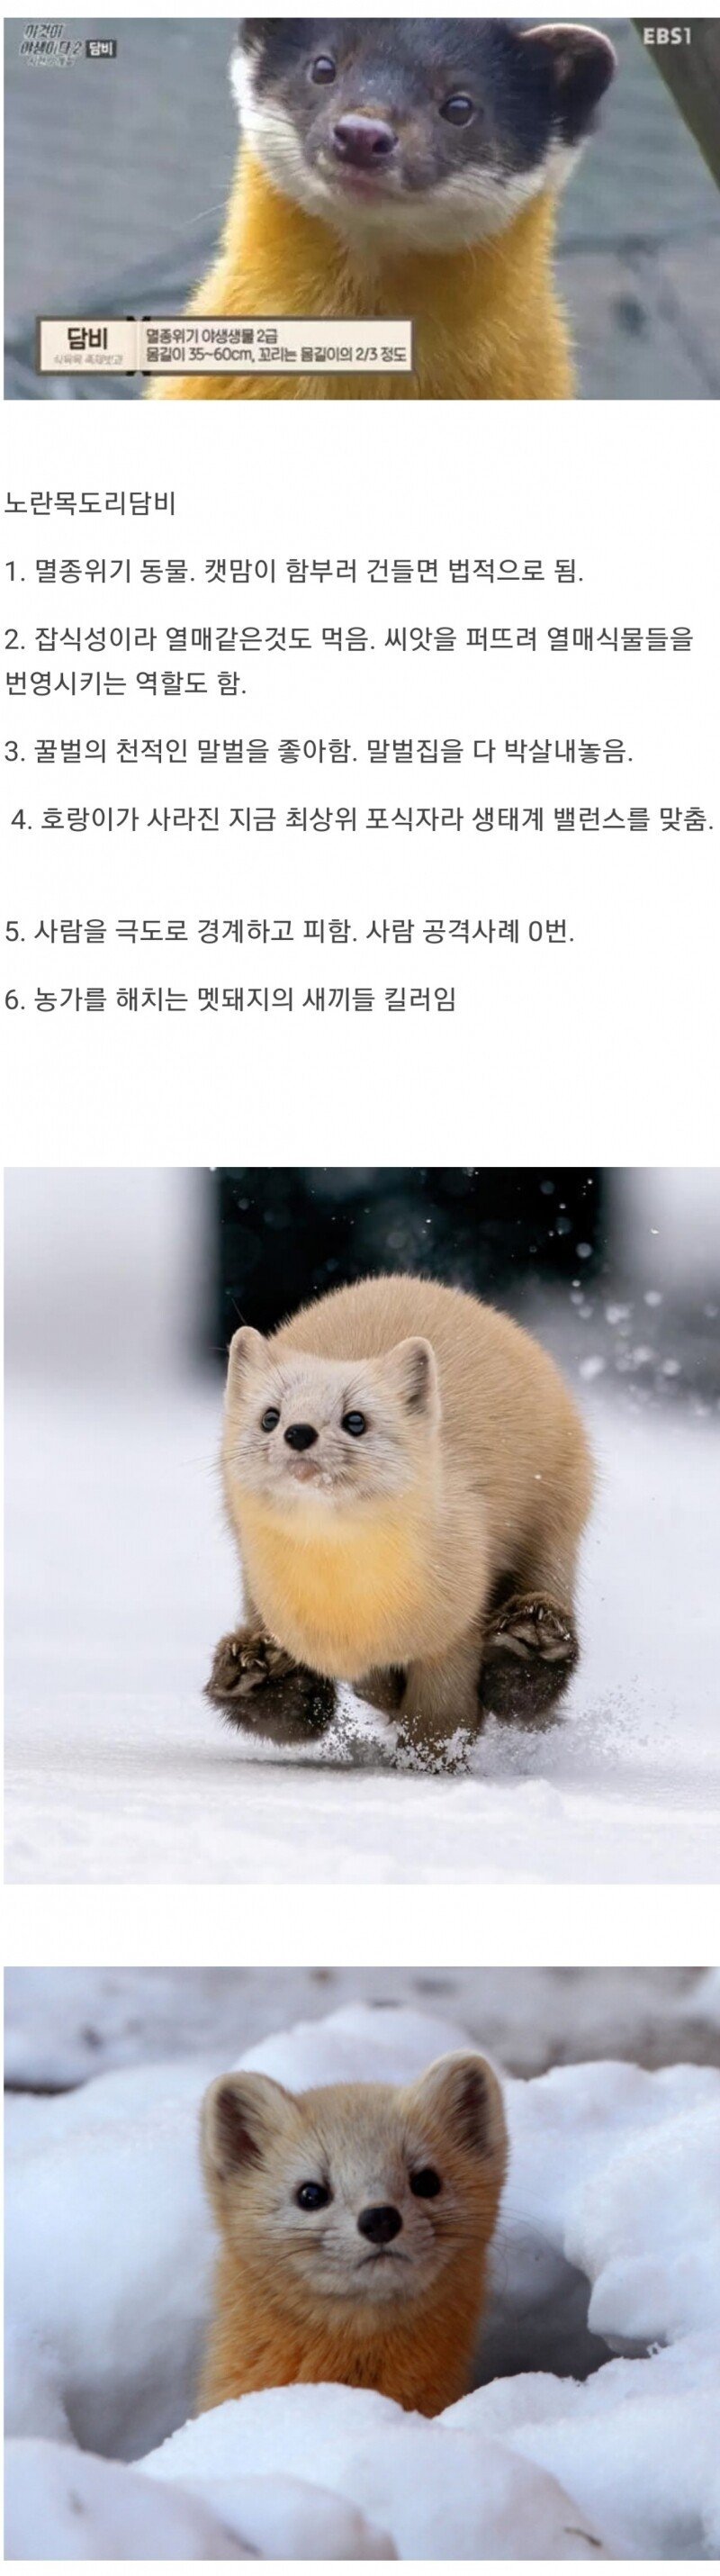 다운로드_(2).jpeg : 현재 한국 생태계 최상급인 동물